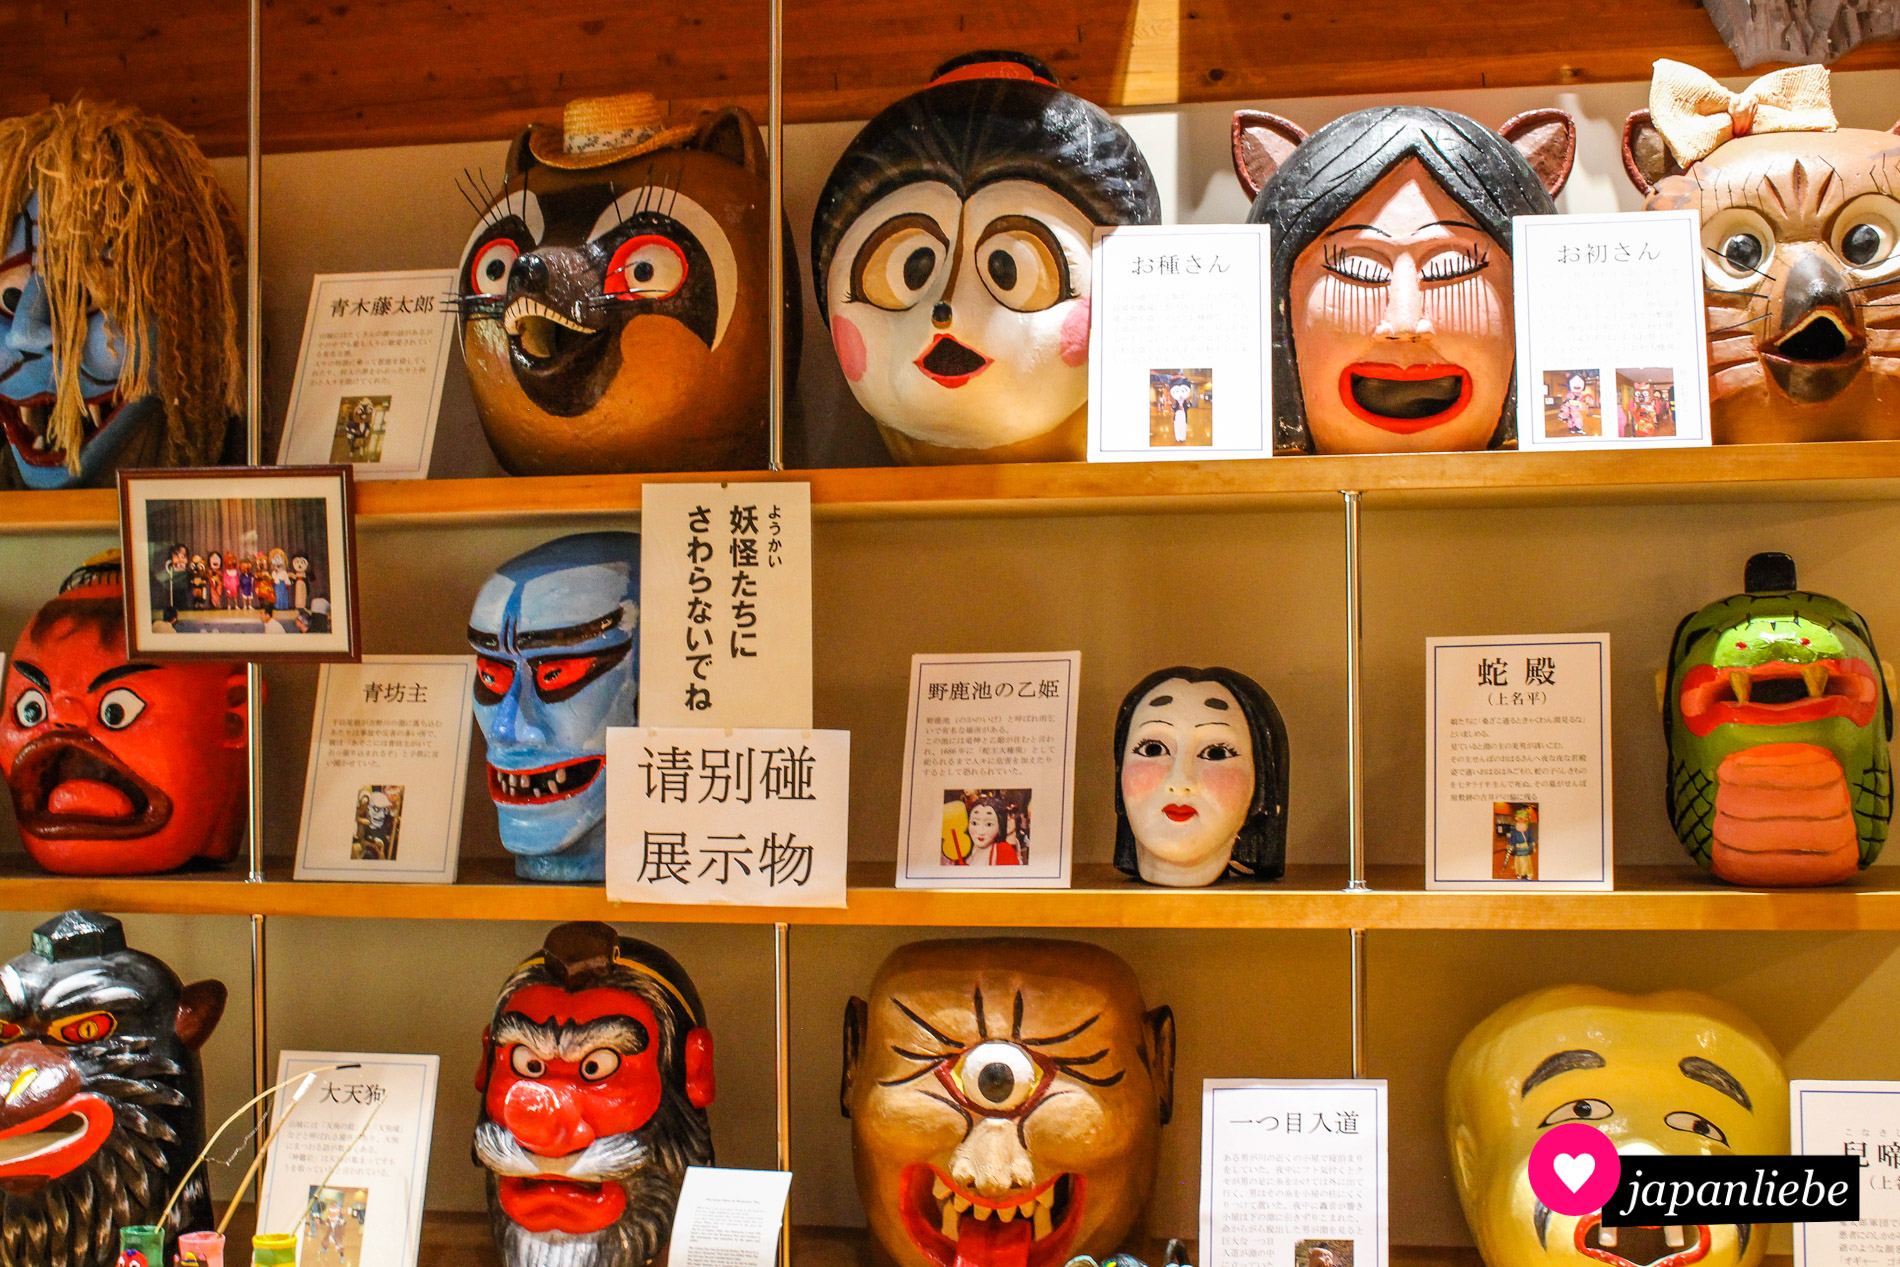 Das Yōkai Museum in Okobe beschäftigt sich mit japanischen Geistern und Monstern.